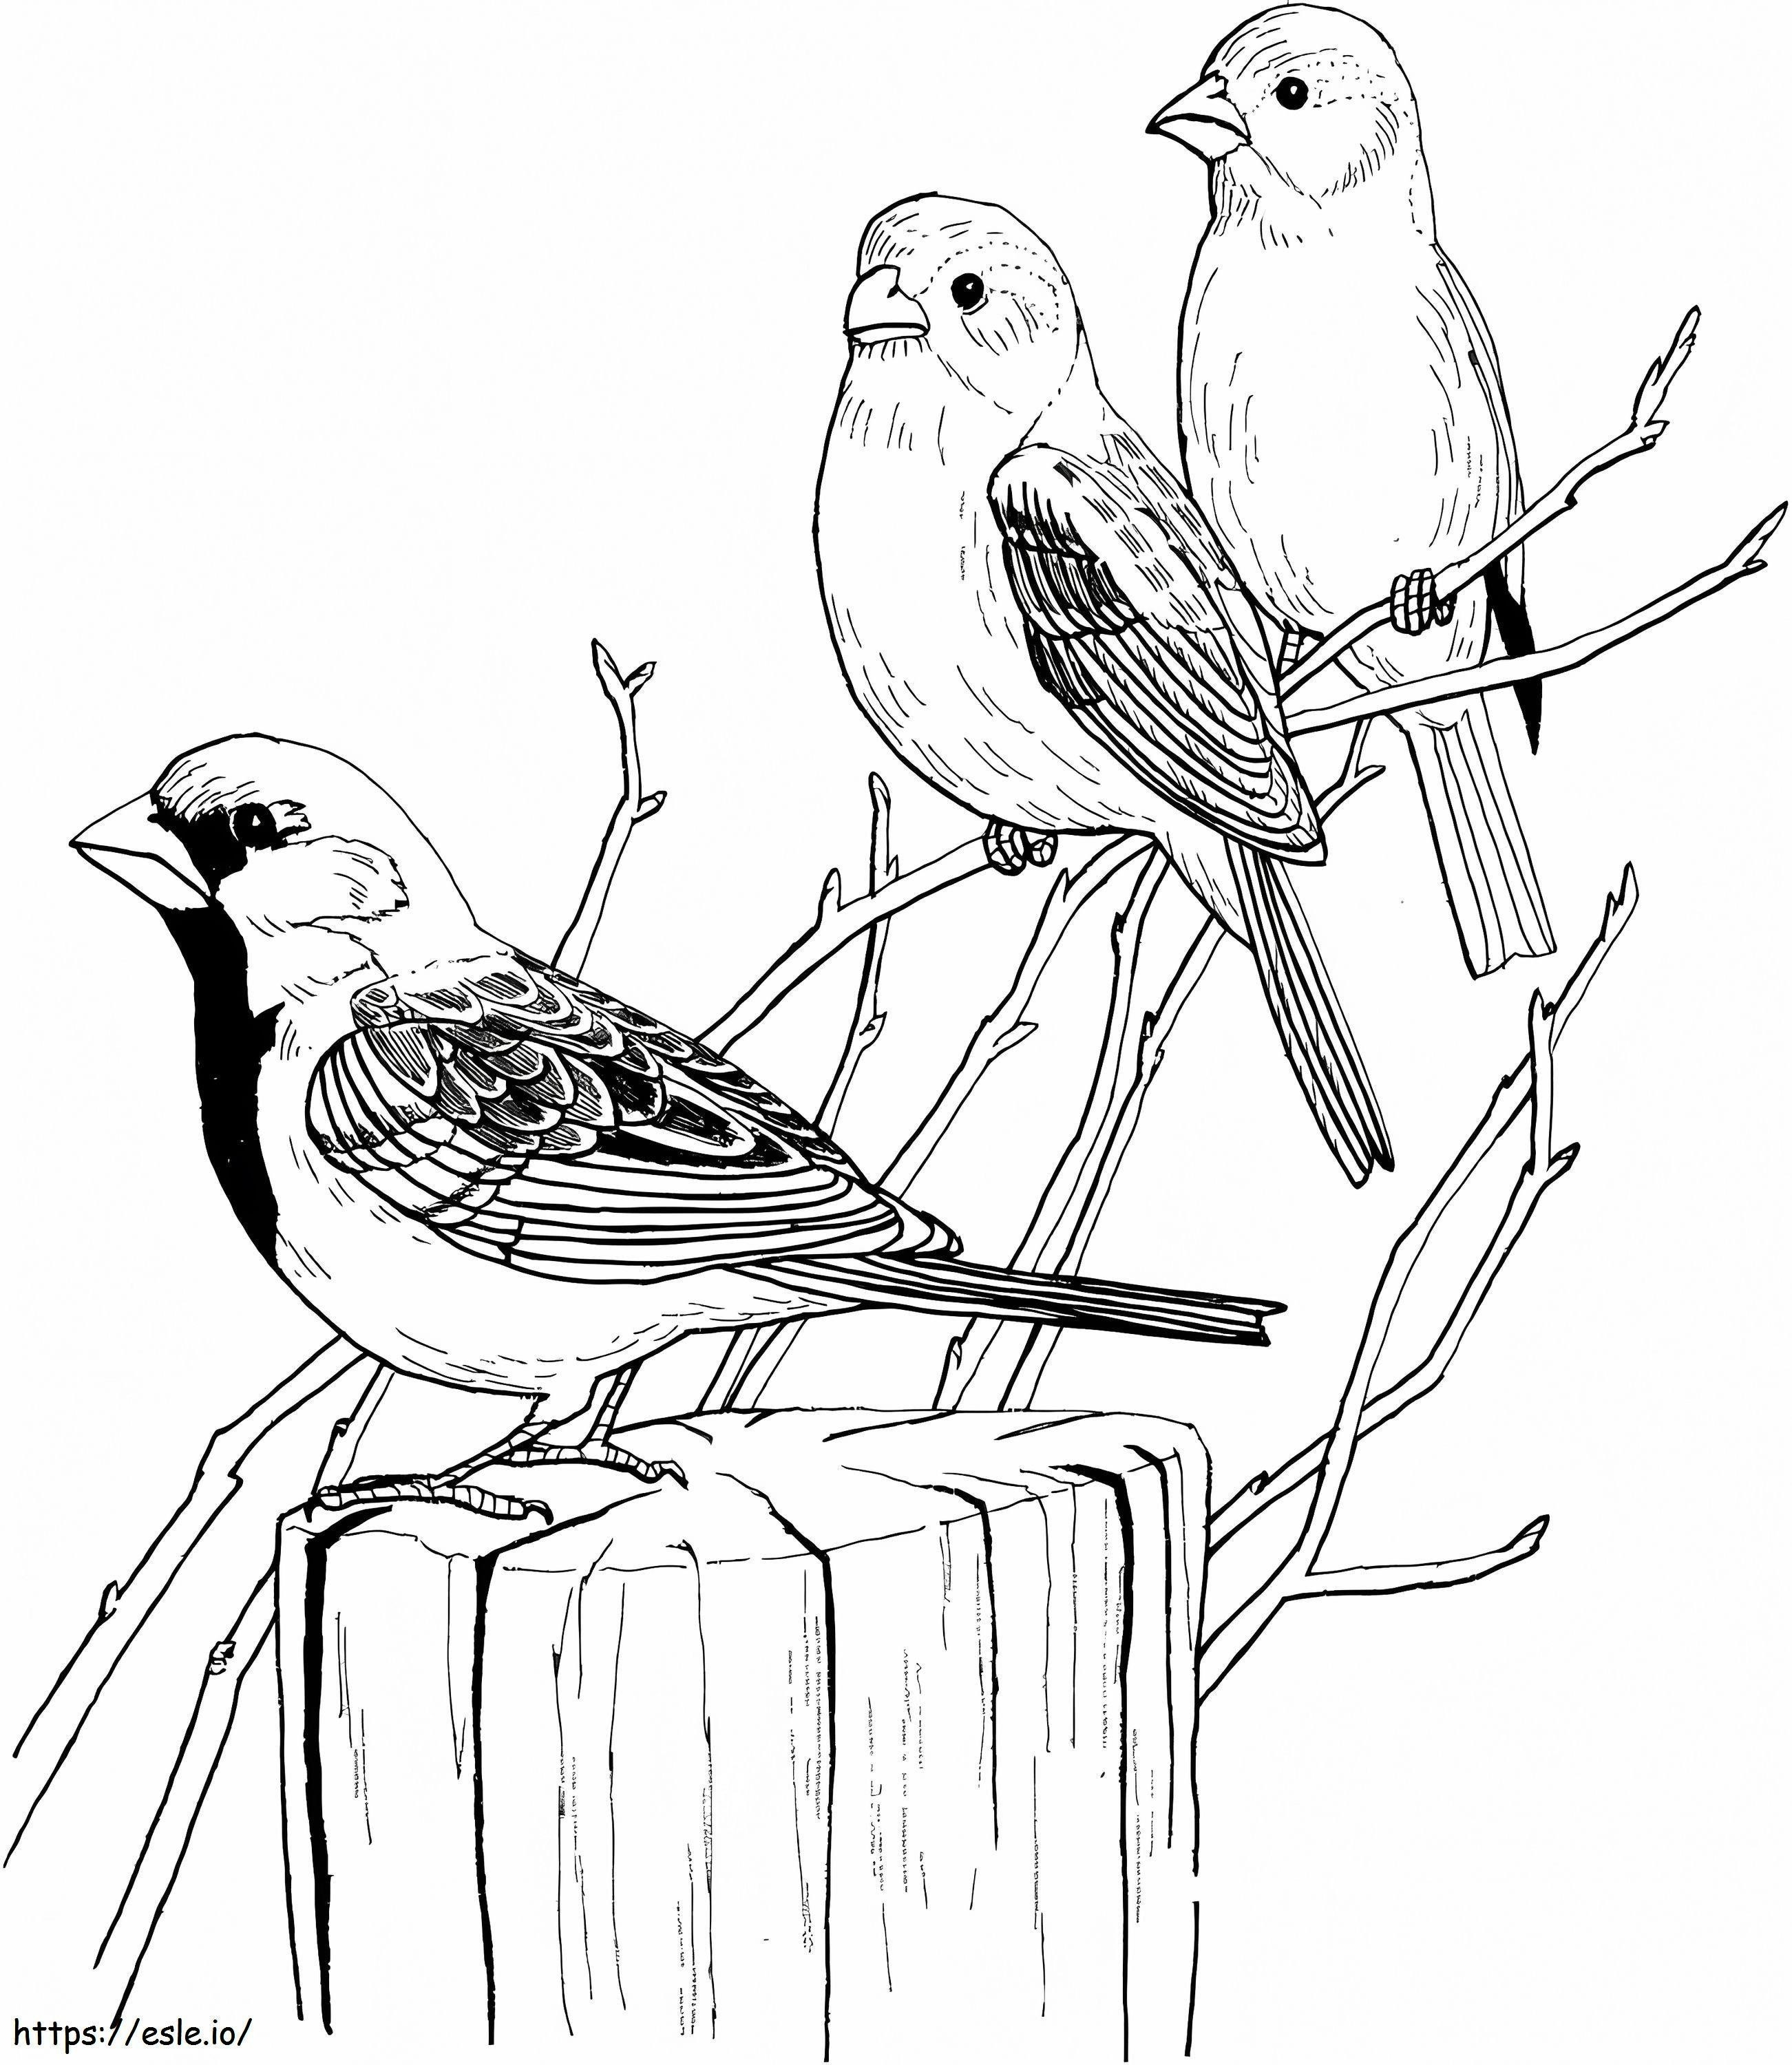 Three Sparrows coloring page